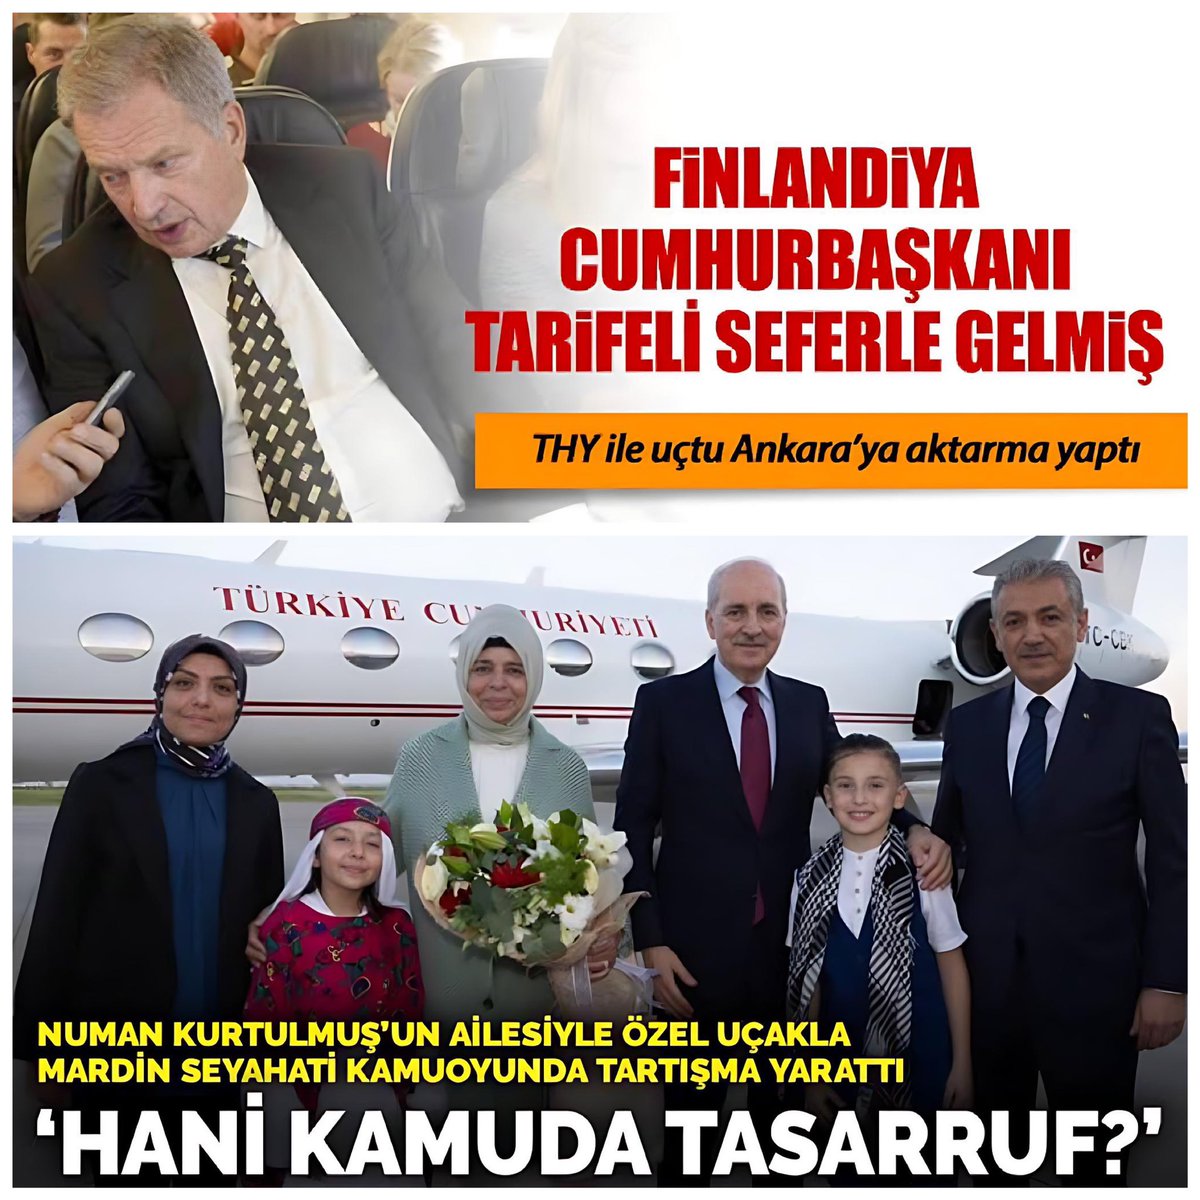 HANİ TASARRUF🤔⁉️ Finlandiya Cumhurbaşkanı Ankara’ya tarifeli uçakla ve aktarmayla gelirken, Meclis Başkanımız ise ailesiyle Mardin’e devletin özel uçağı ile gidip dönüyor. Biz Finlandiya’dan dahamı zenginiz⁉️ #pazar #EmekliBittinizDedi